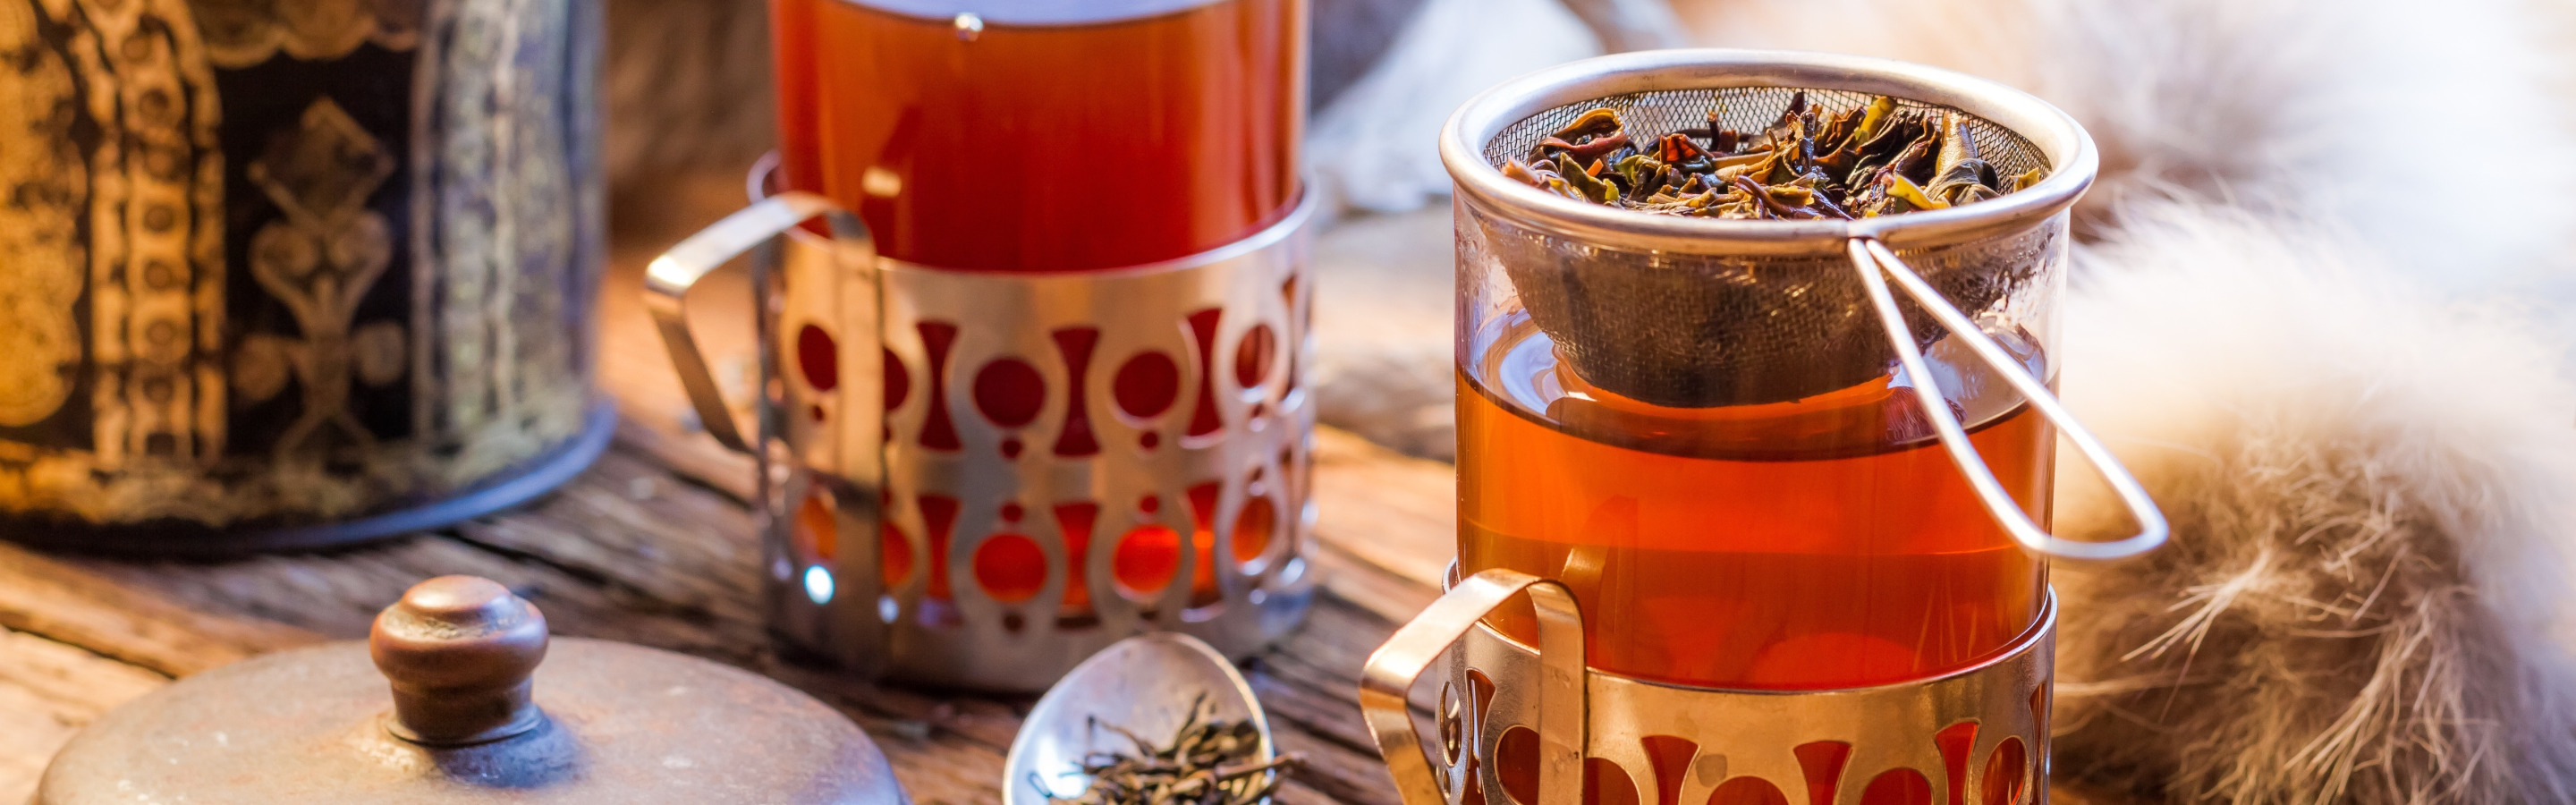 Чай. Горячий напиток. Чай в подстаканнике. Чаепитие в саду. В жару пьют горячий чай